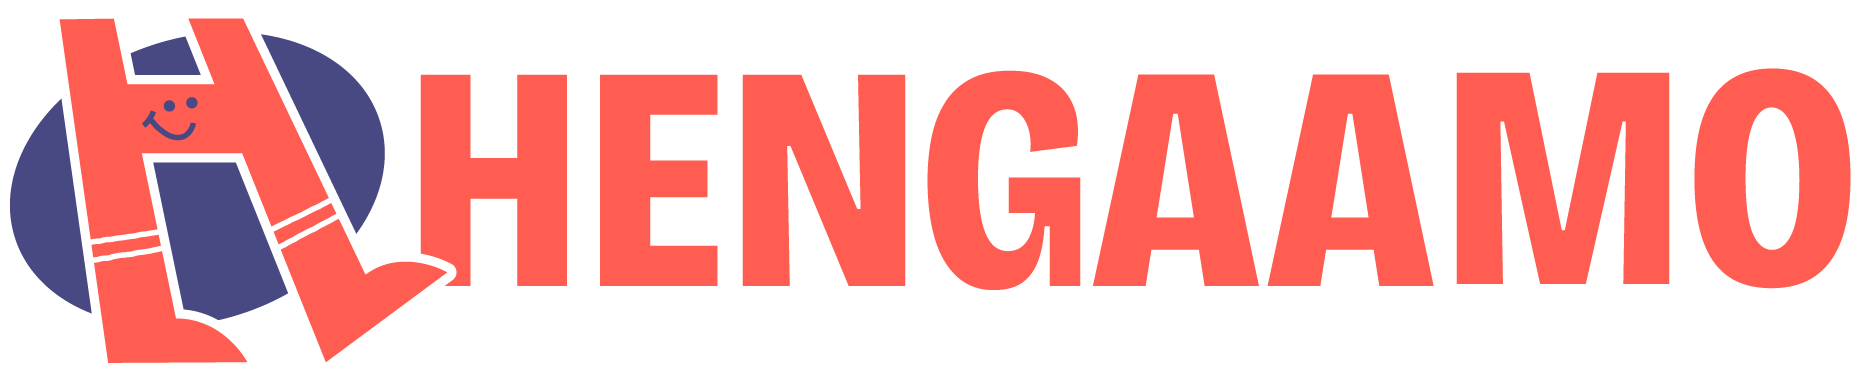 Hengaamo logo